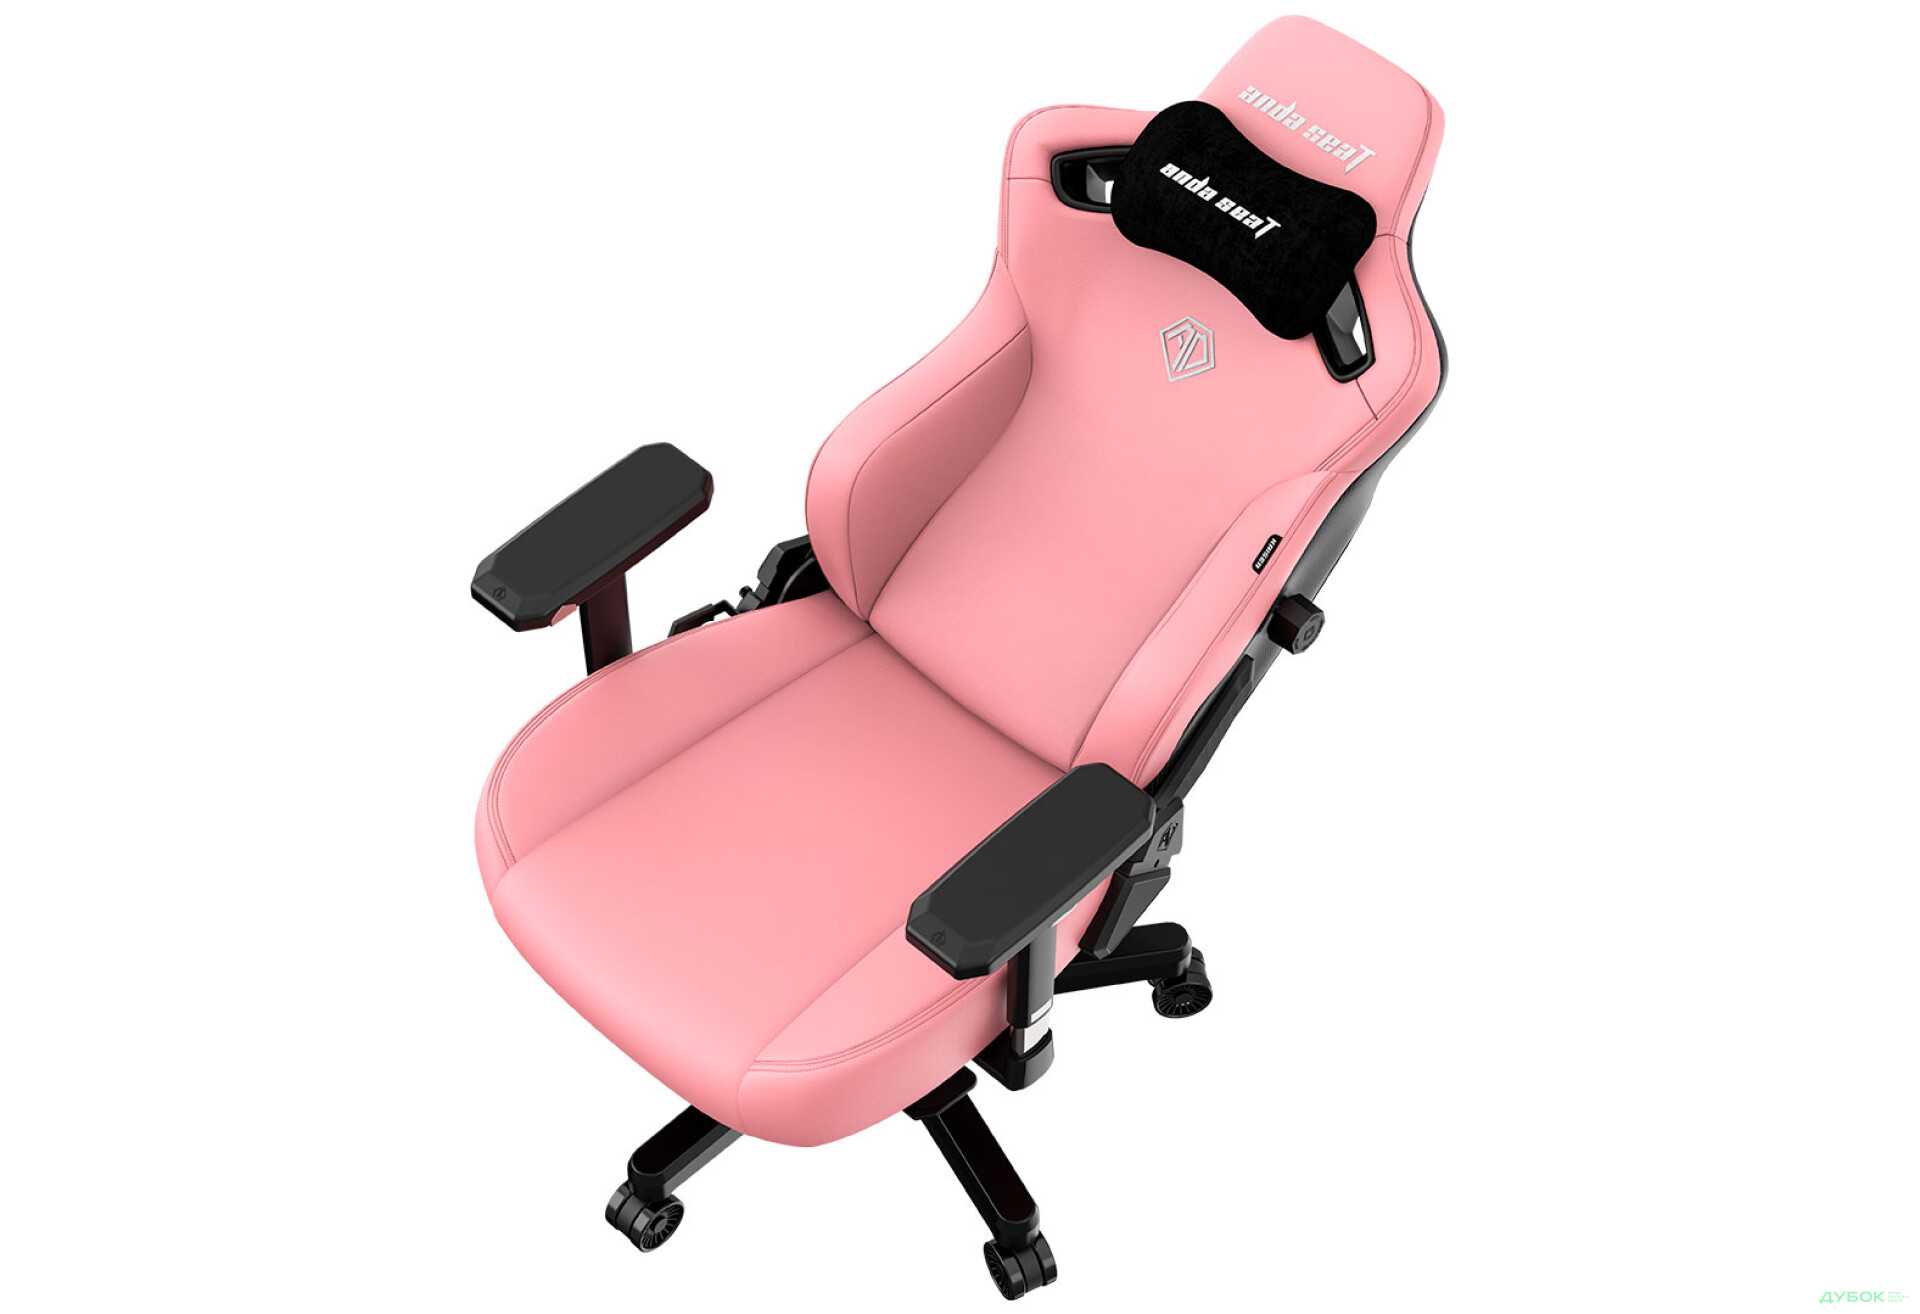 Фото 8 - Компьютерное кресло Anda Seat Kaiser 3 72x57x136 см игровое, розовое